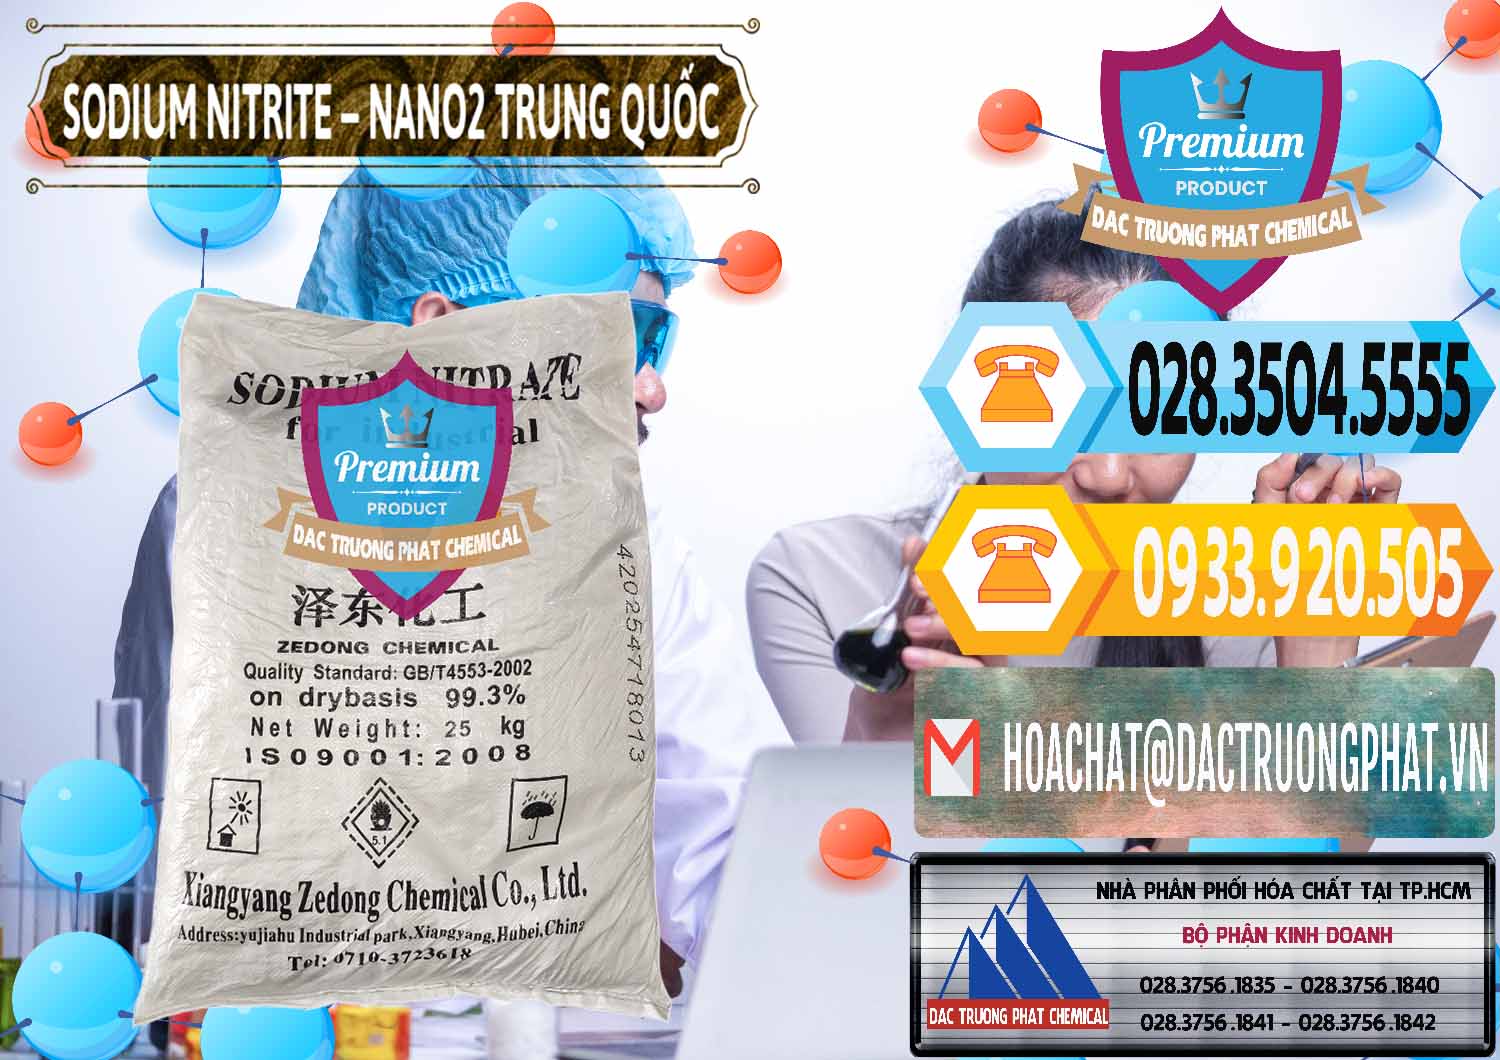 Cty chuyên phân phối - bán Sodium Nitrite - NANO2 Zedong Trung Quốc China - 0149 - Công ty phân phối & cung ứng hóa chất tại TP.HCM - hoachattayrua.net